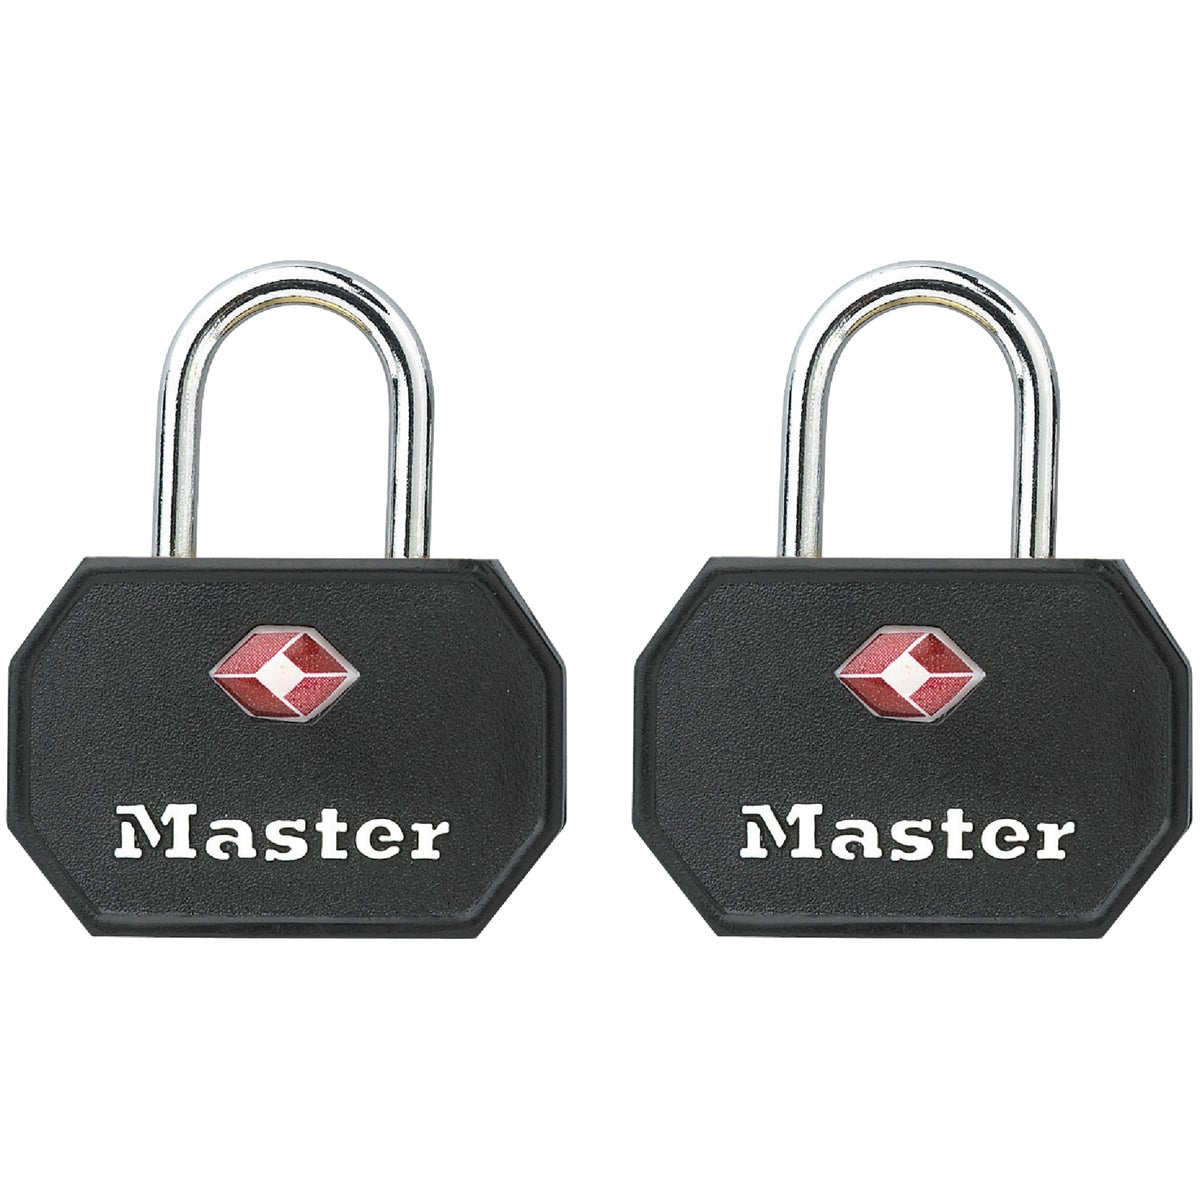 Item 238090, 1-1/4" wide TSA keyed luggage lock allows TSA screeners to inspect and 